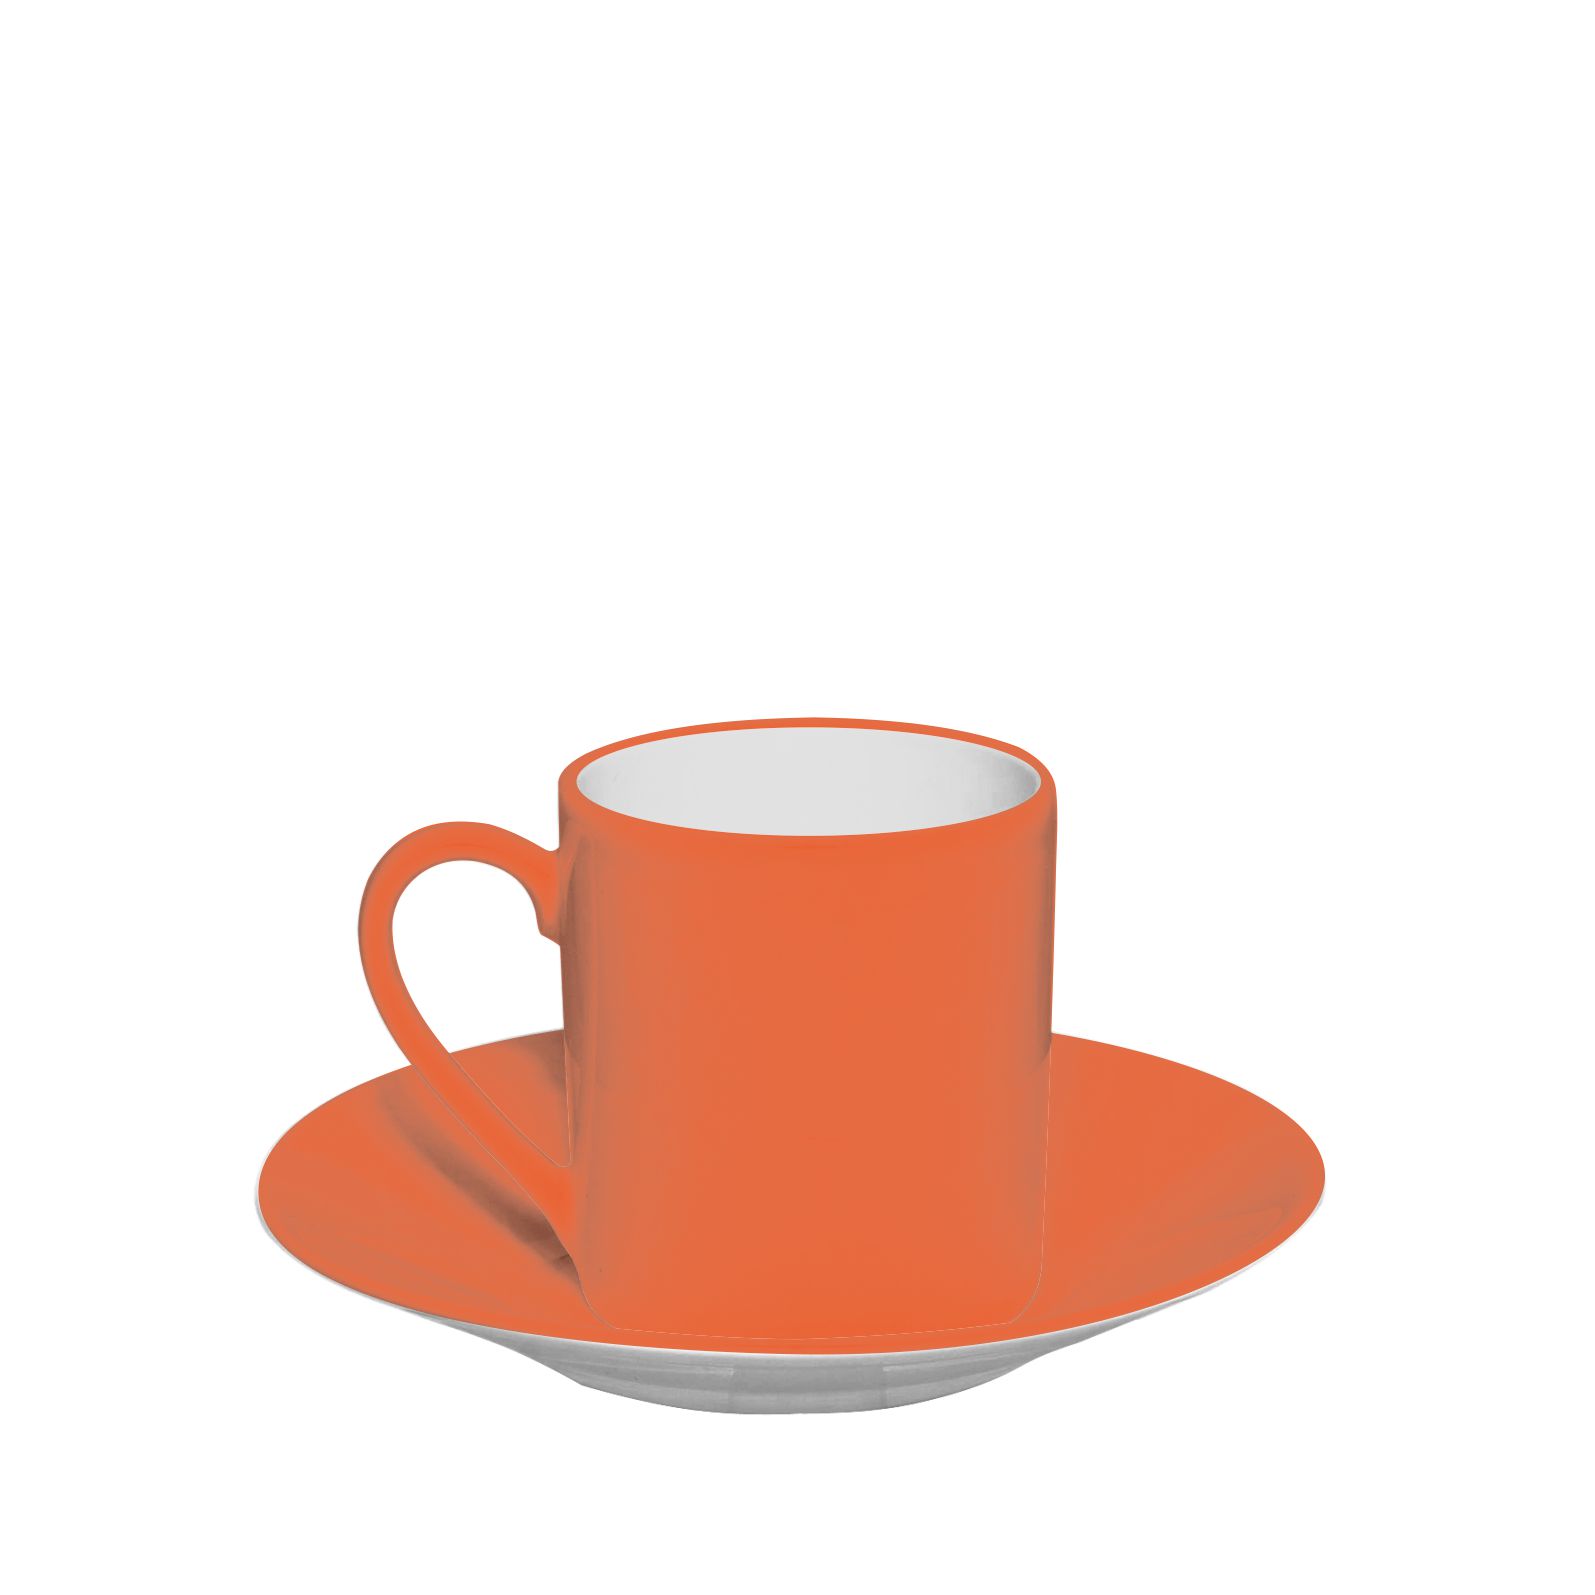 /sites/default/files/2020-03/Fili%C5%BCanka_classic_espresso_orange.jpg